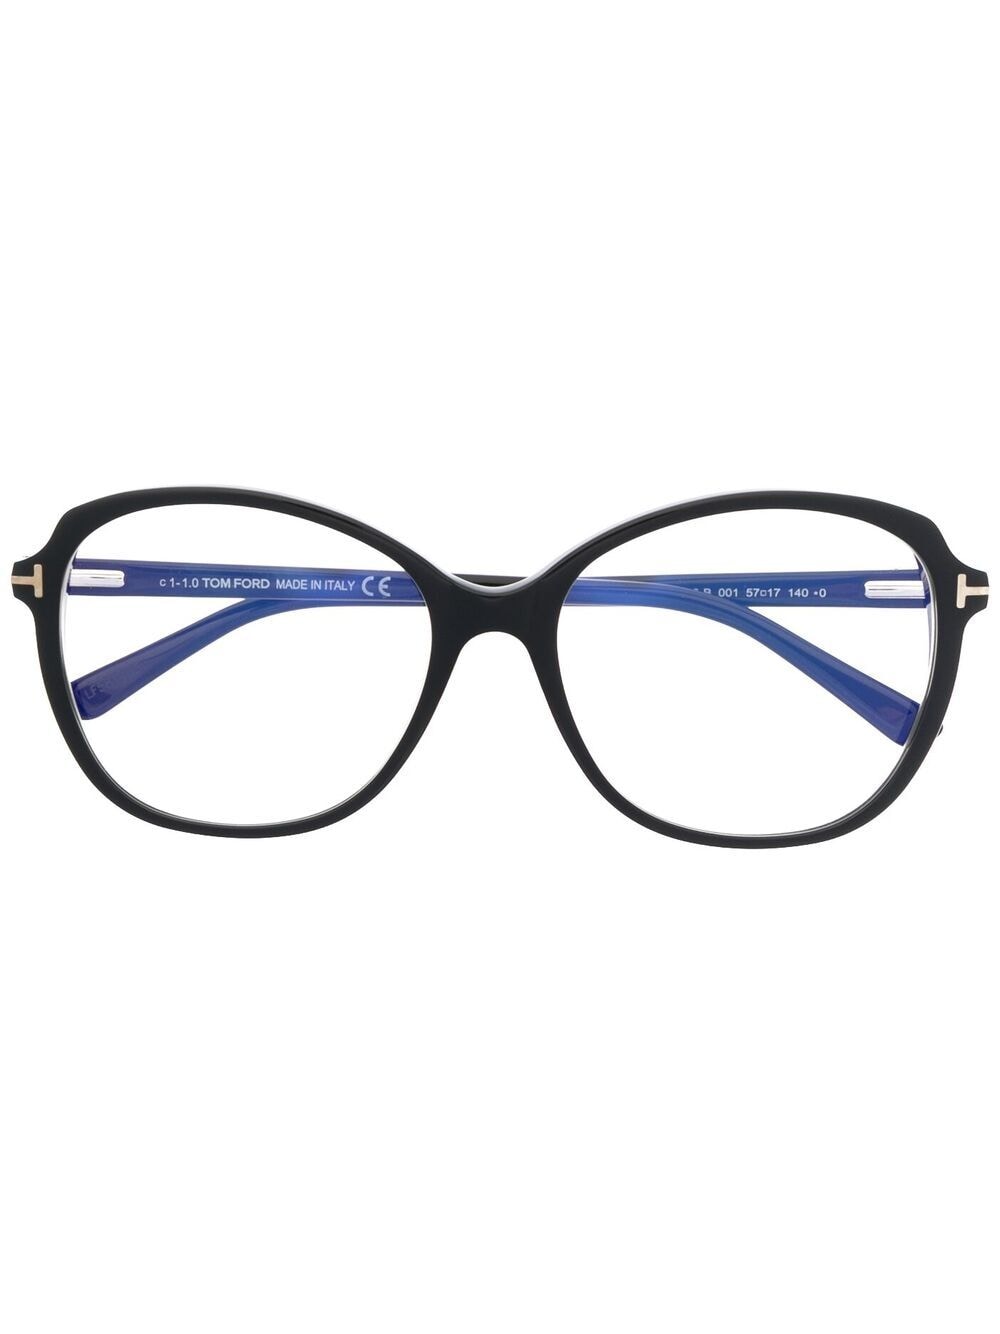 фото Tom ford eyewear очки ft5708-b в круглой оправе